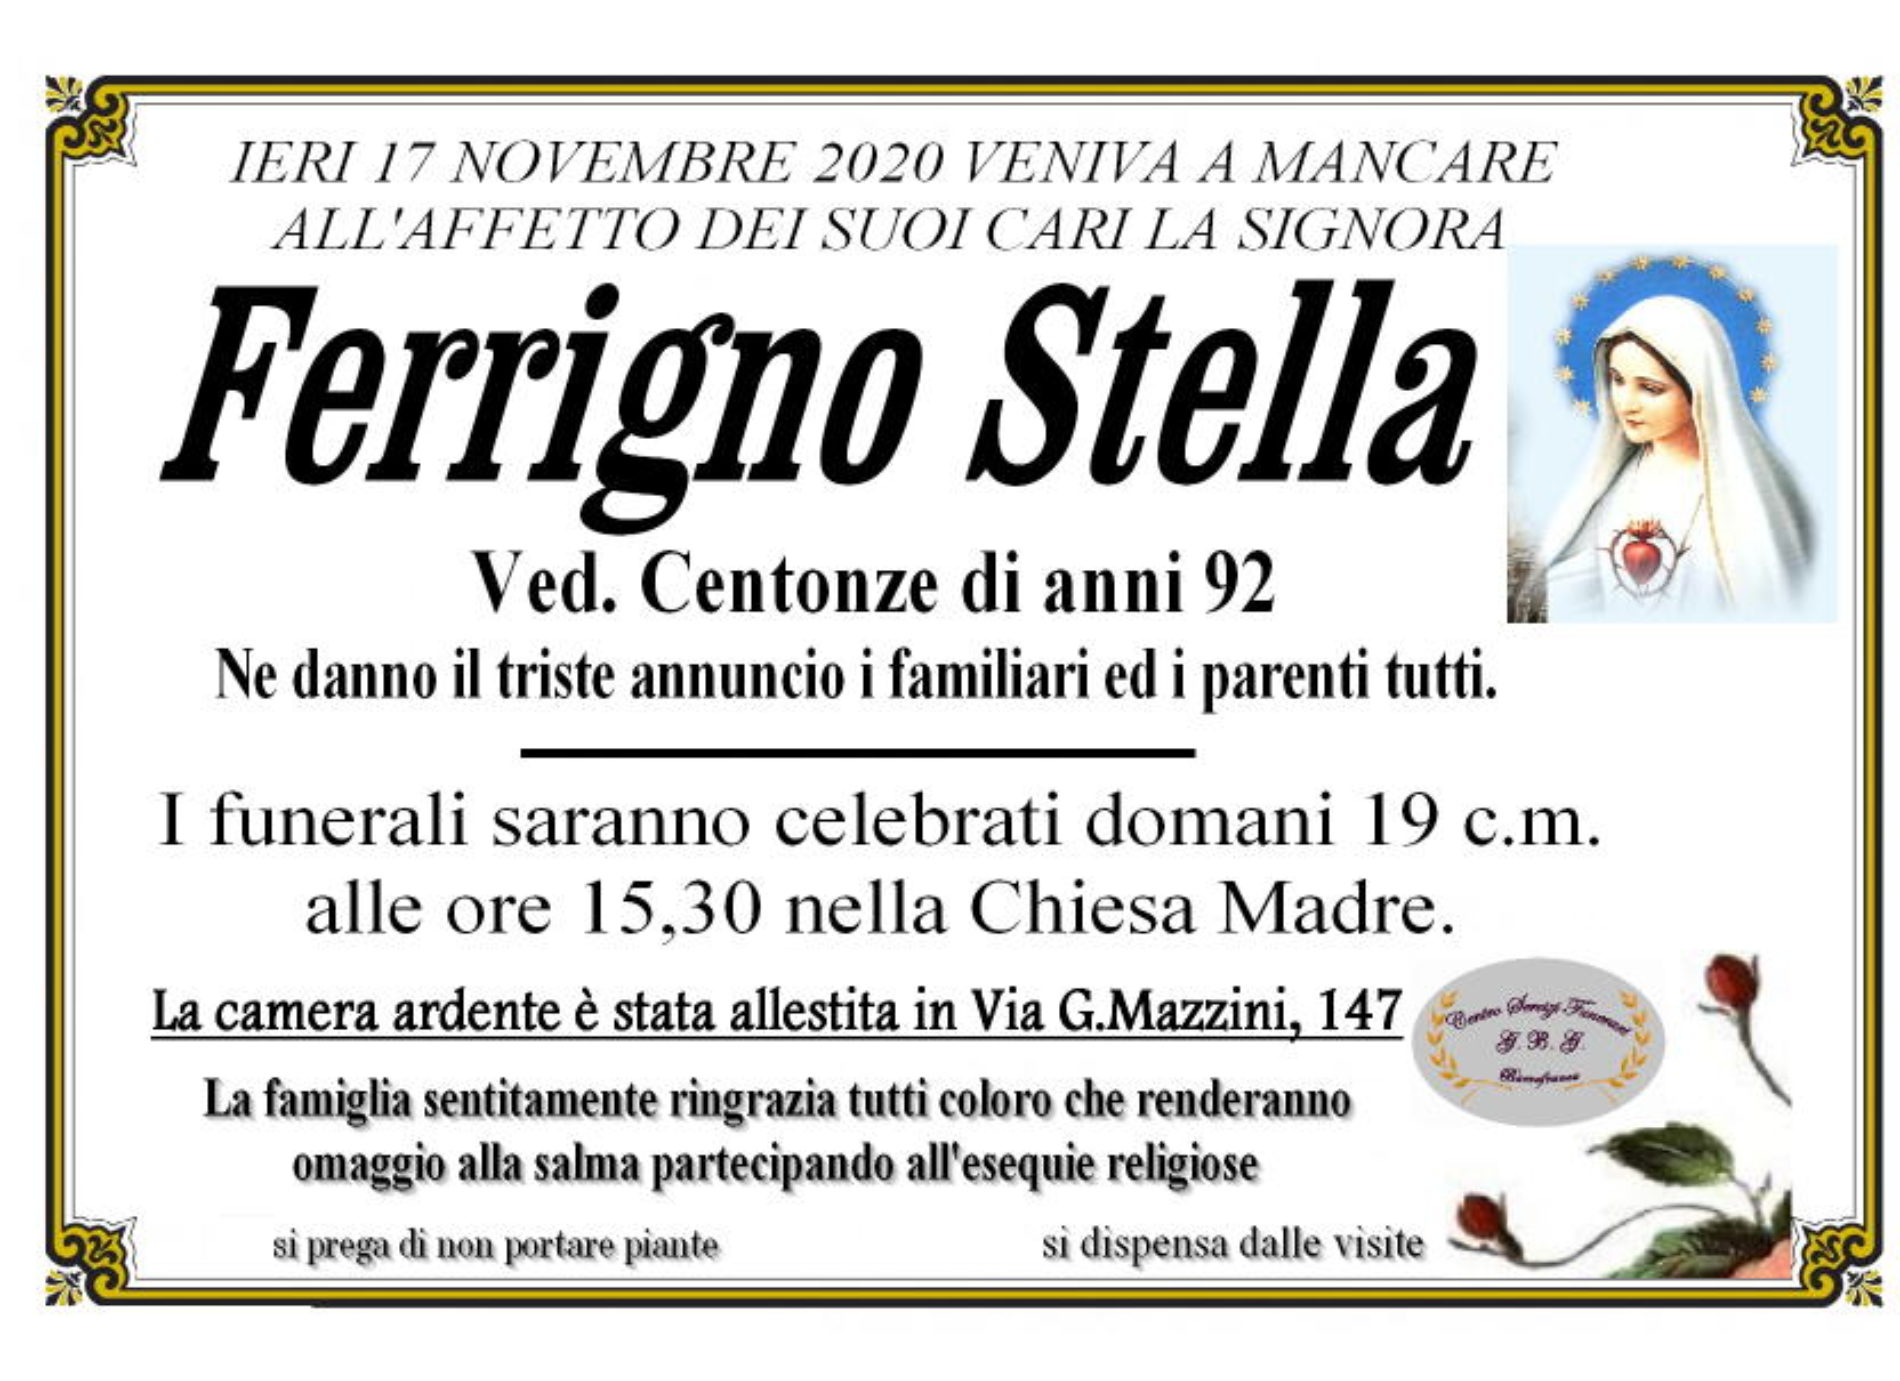 Annuncio servizi funerari agenzia G.B.G. sig.ra Ferrigno Stella ved. Centonze anni 92